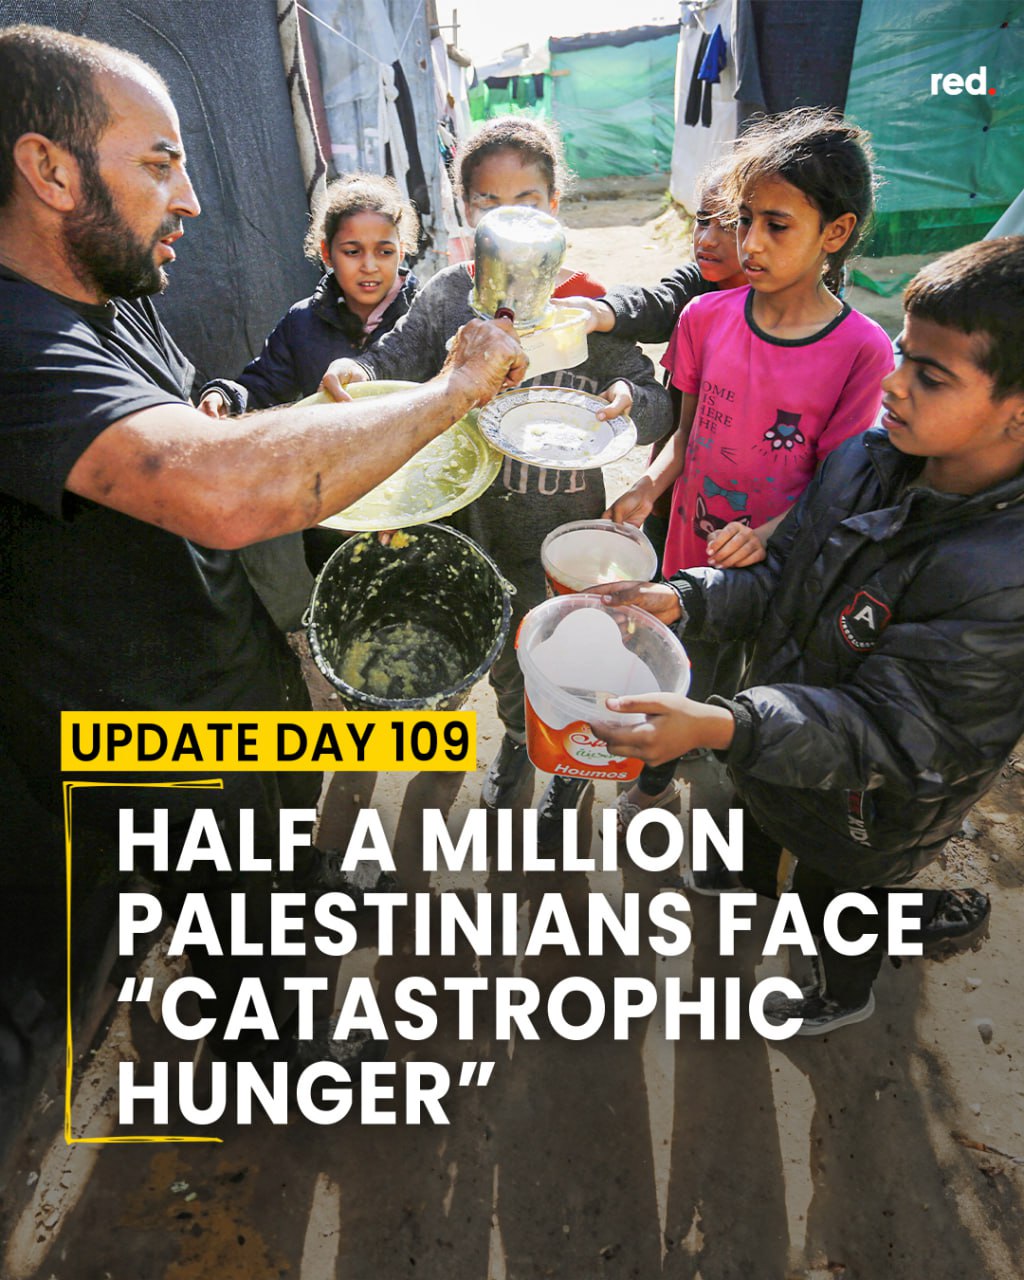 Mezzo milione di palestinesi alla fame. Morti 24 soldati israeliani. Hamas rifiuta proposta israeliana di due mesi di tregua in cambio della liberazione degli ostaggi.